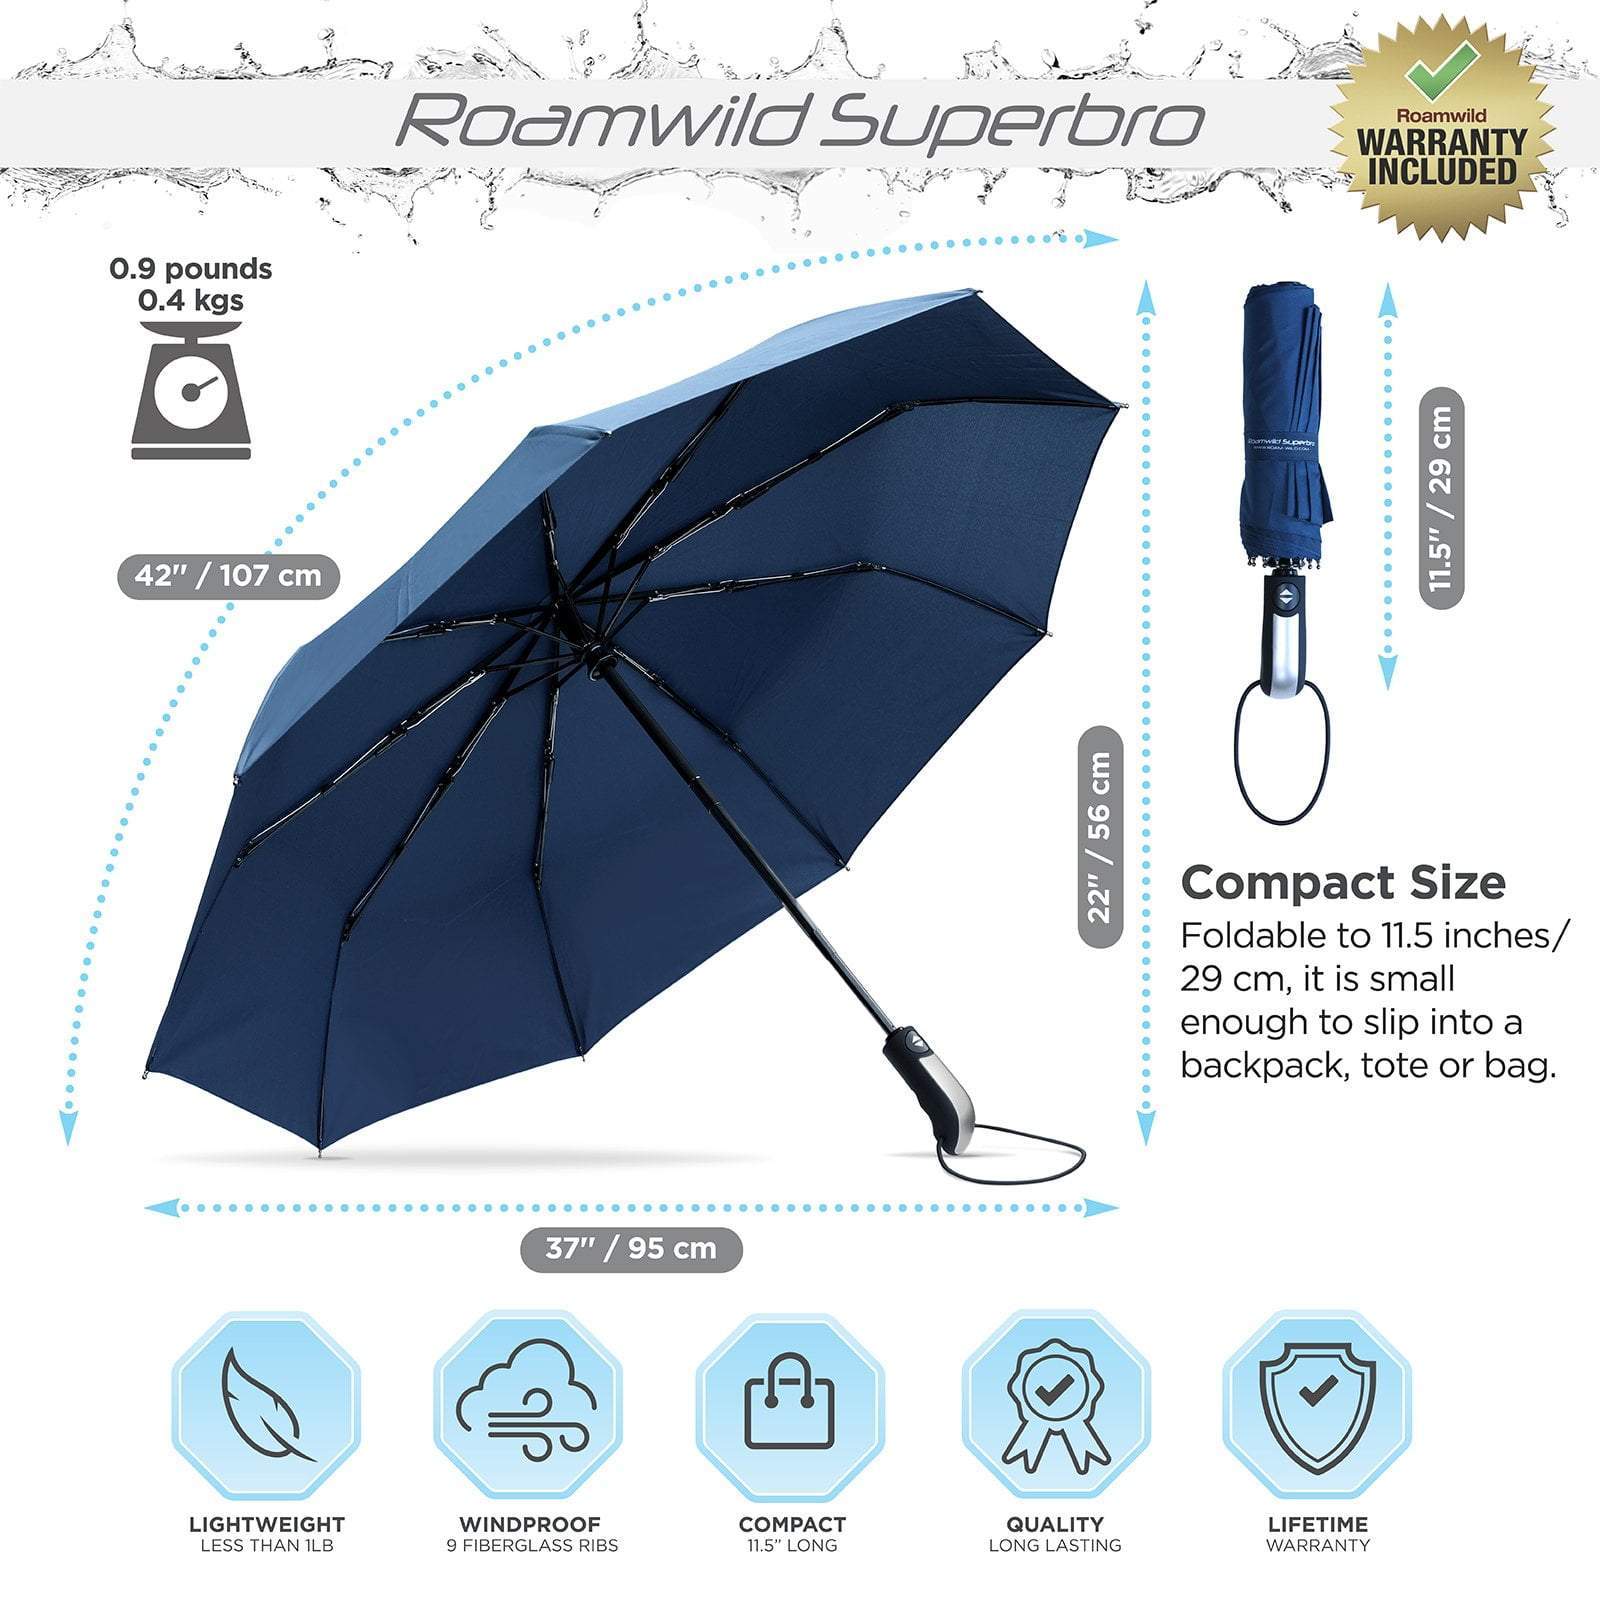 Roamwild SuperBro Folding Travel Umbrella - Roamwild